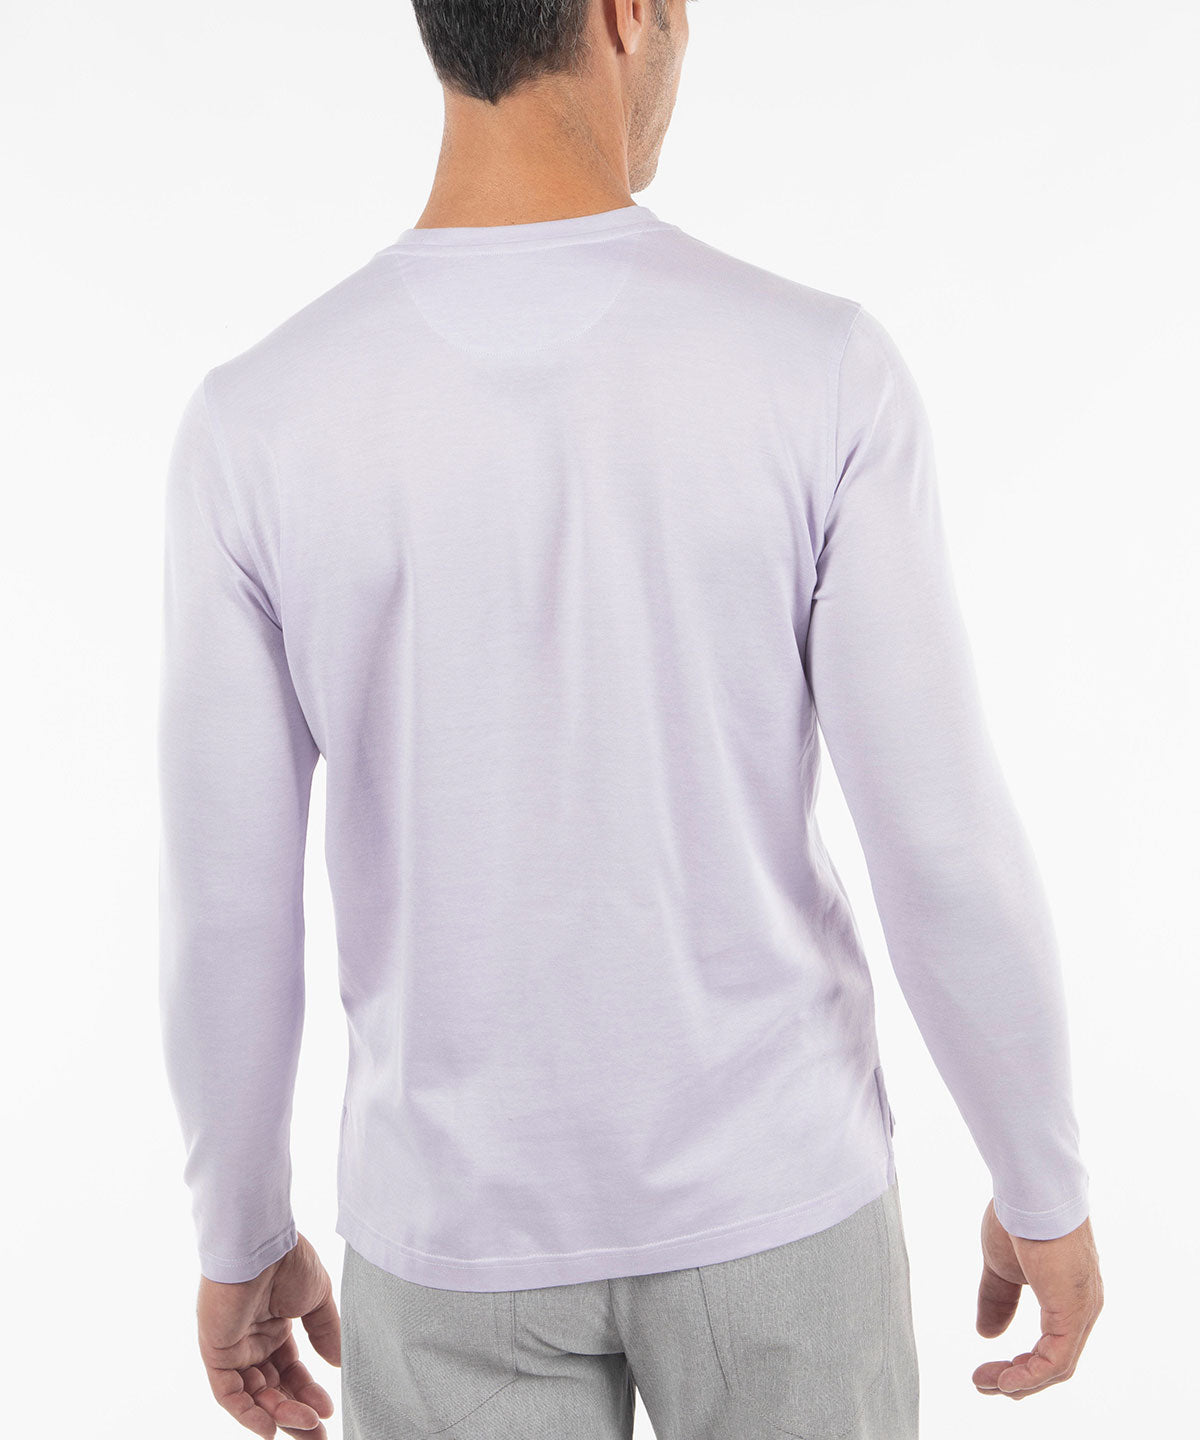 Signature Cotton Knit Long-Sleeve Cabana Tee Shirt